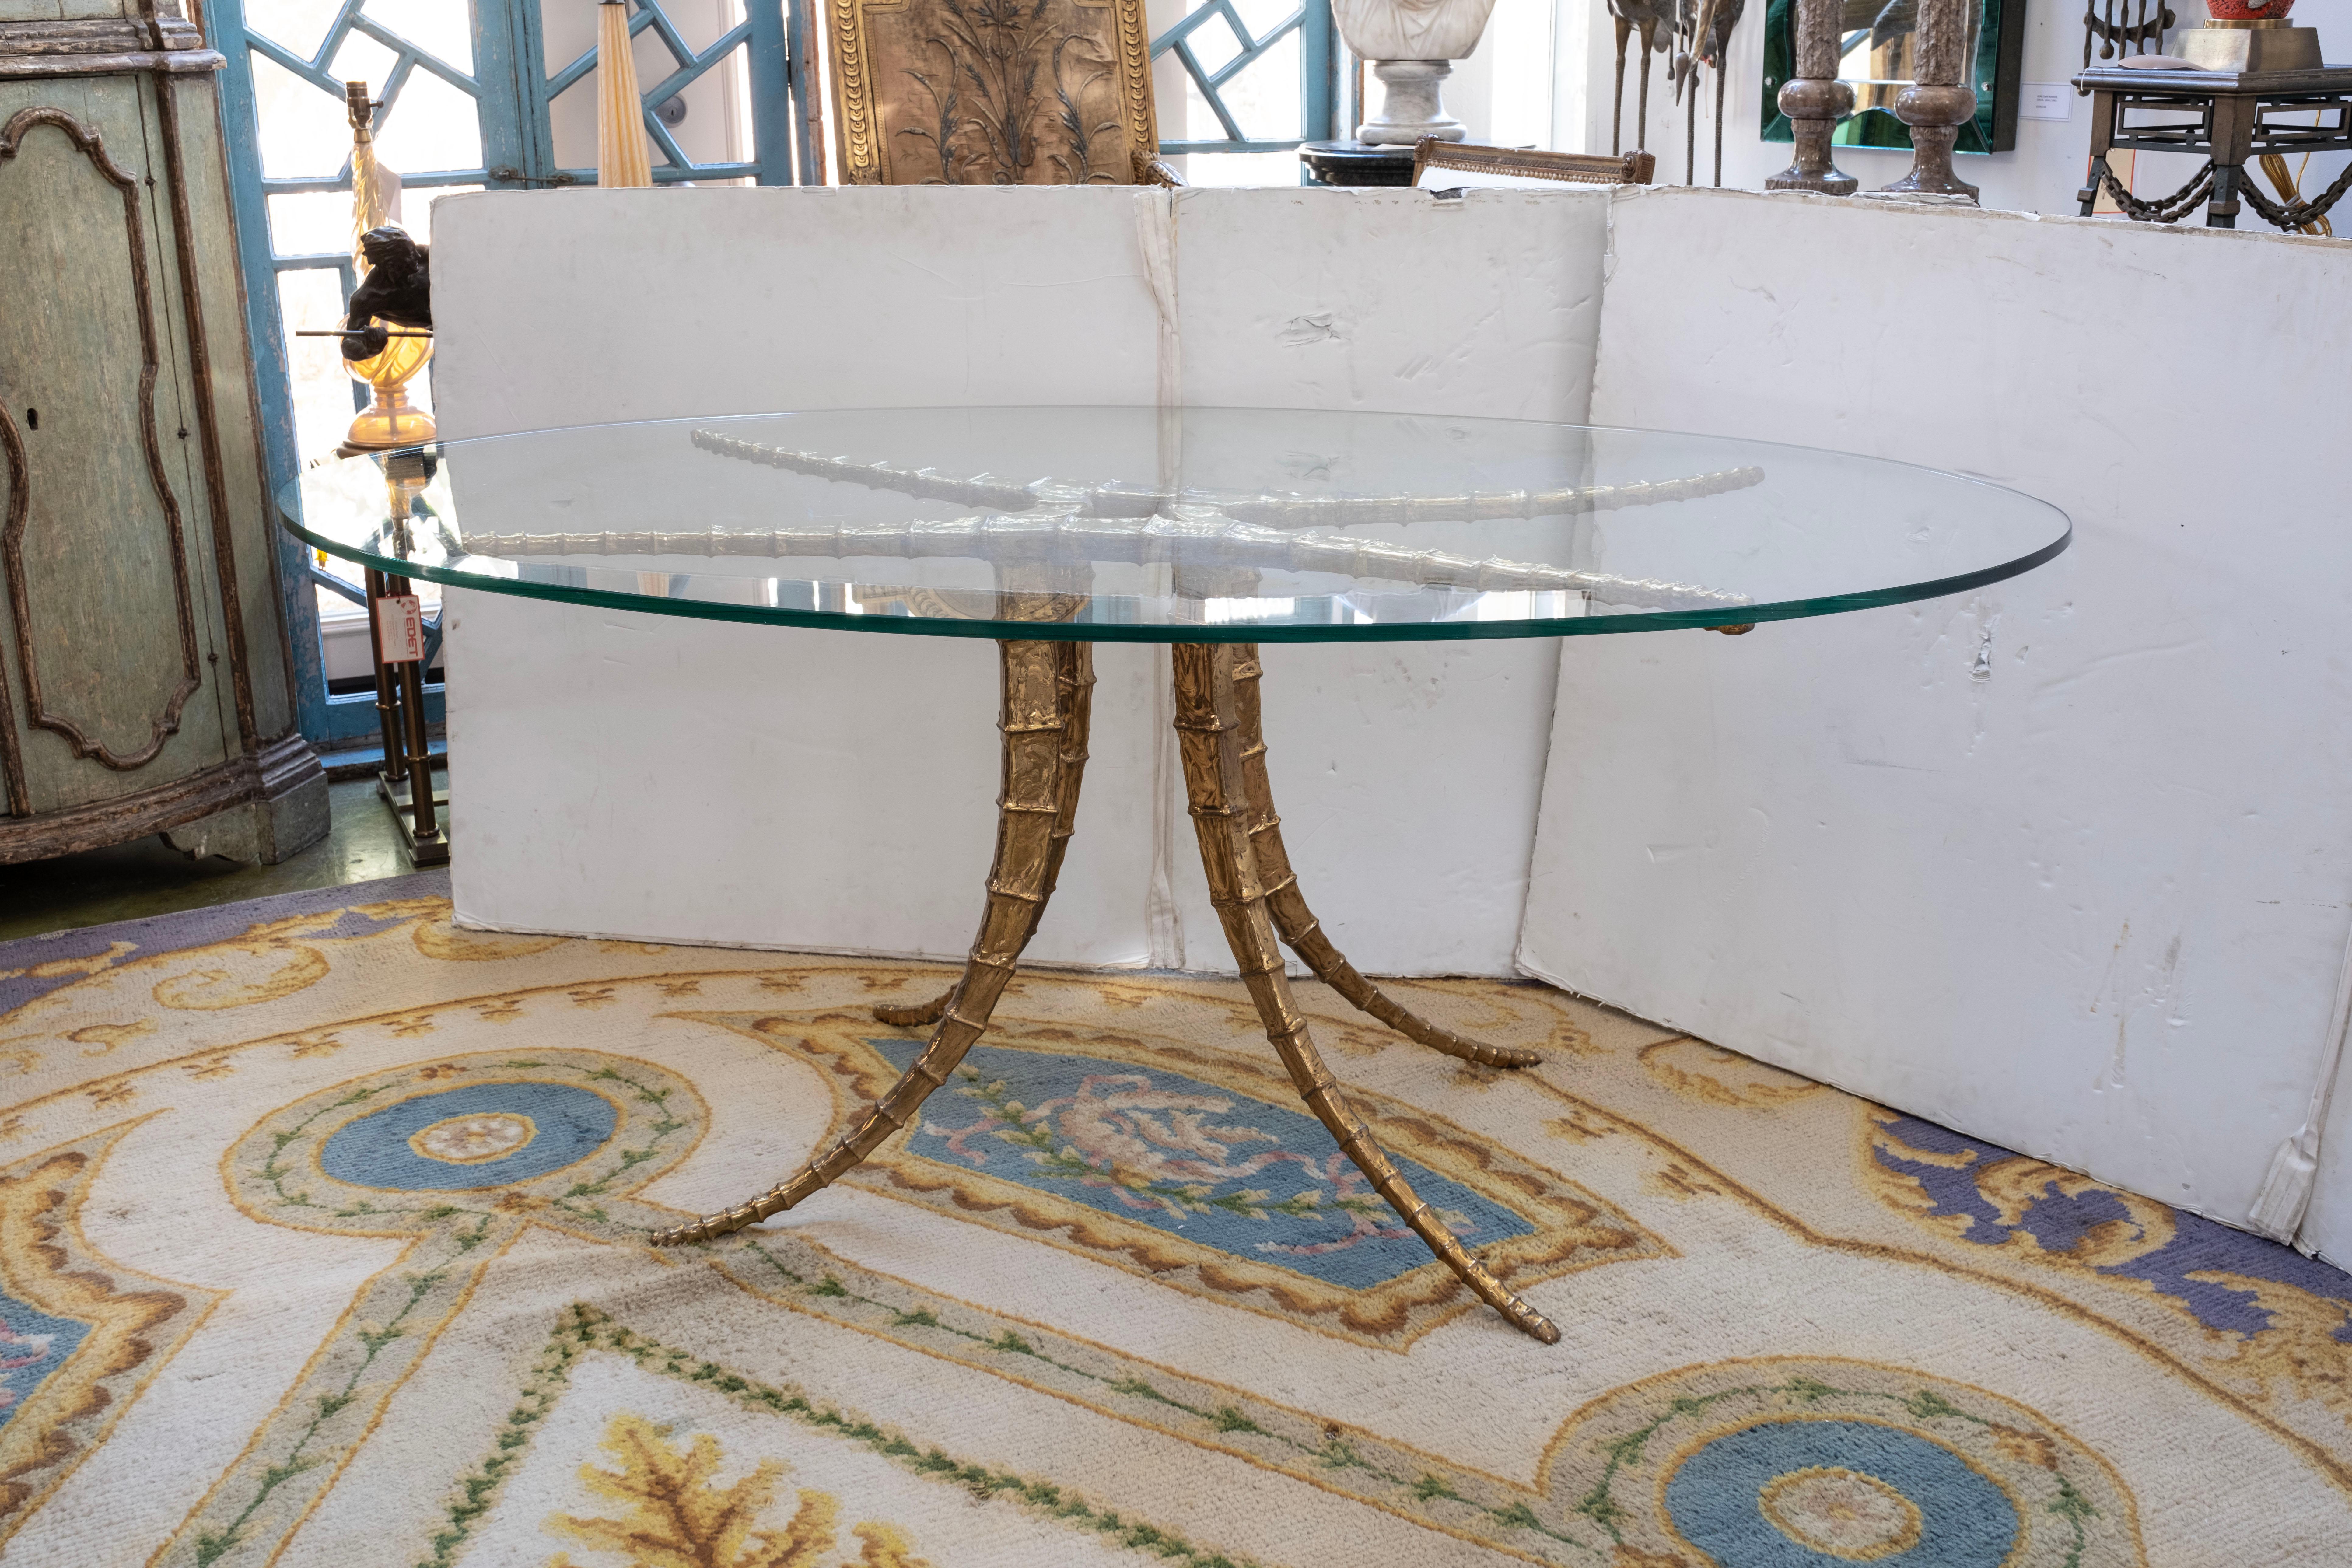 Französisch Messing Horn Esstisch / Mitte Tisch von Alain Chervet unterzeichnet.
Dieser seltene französische Horn-Tisch aus Messing mit einer ovalen Glasplatte ist von Alain Chervet signiert, 1981. Unser vielseitiger französischer